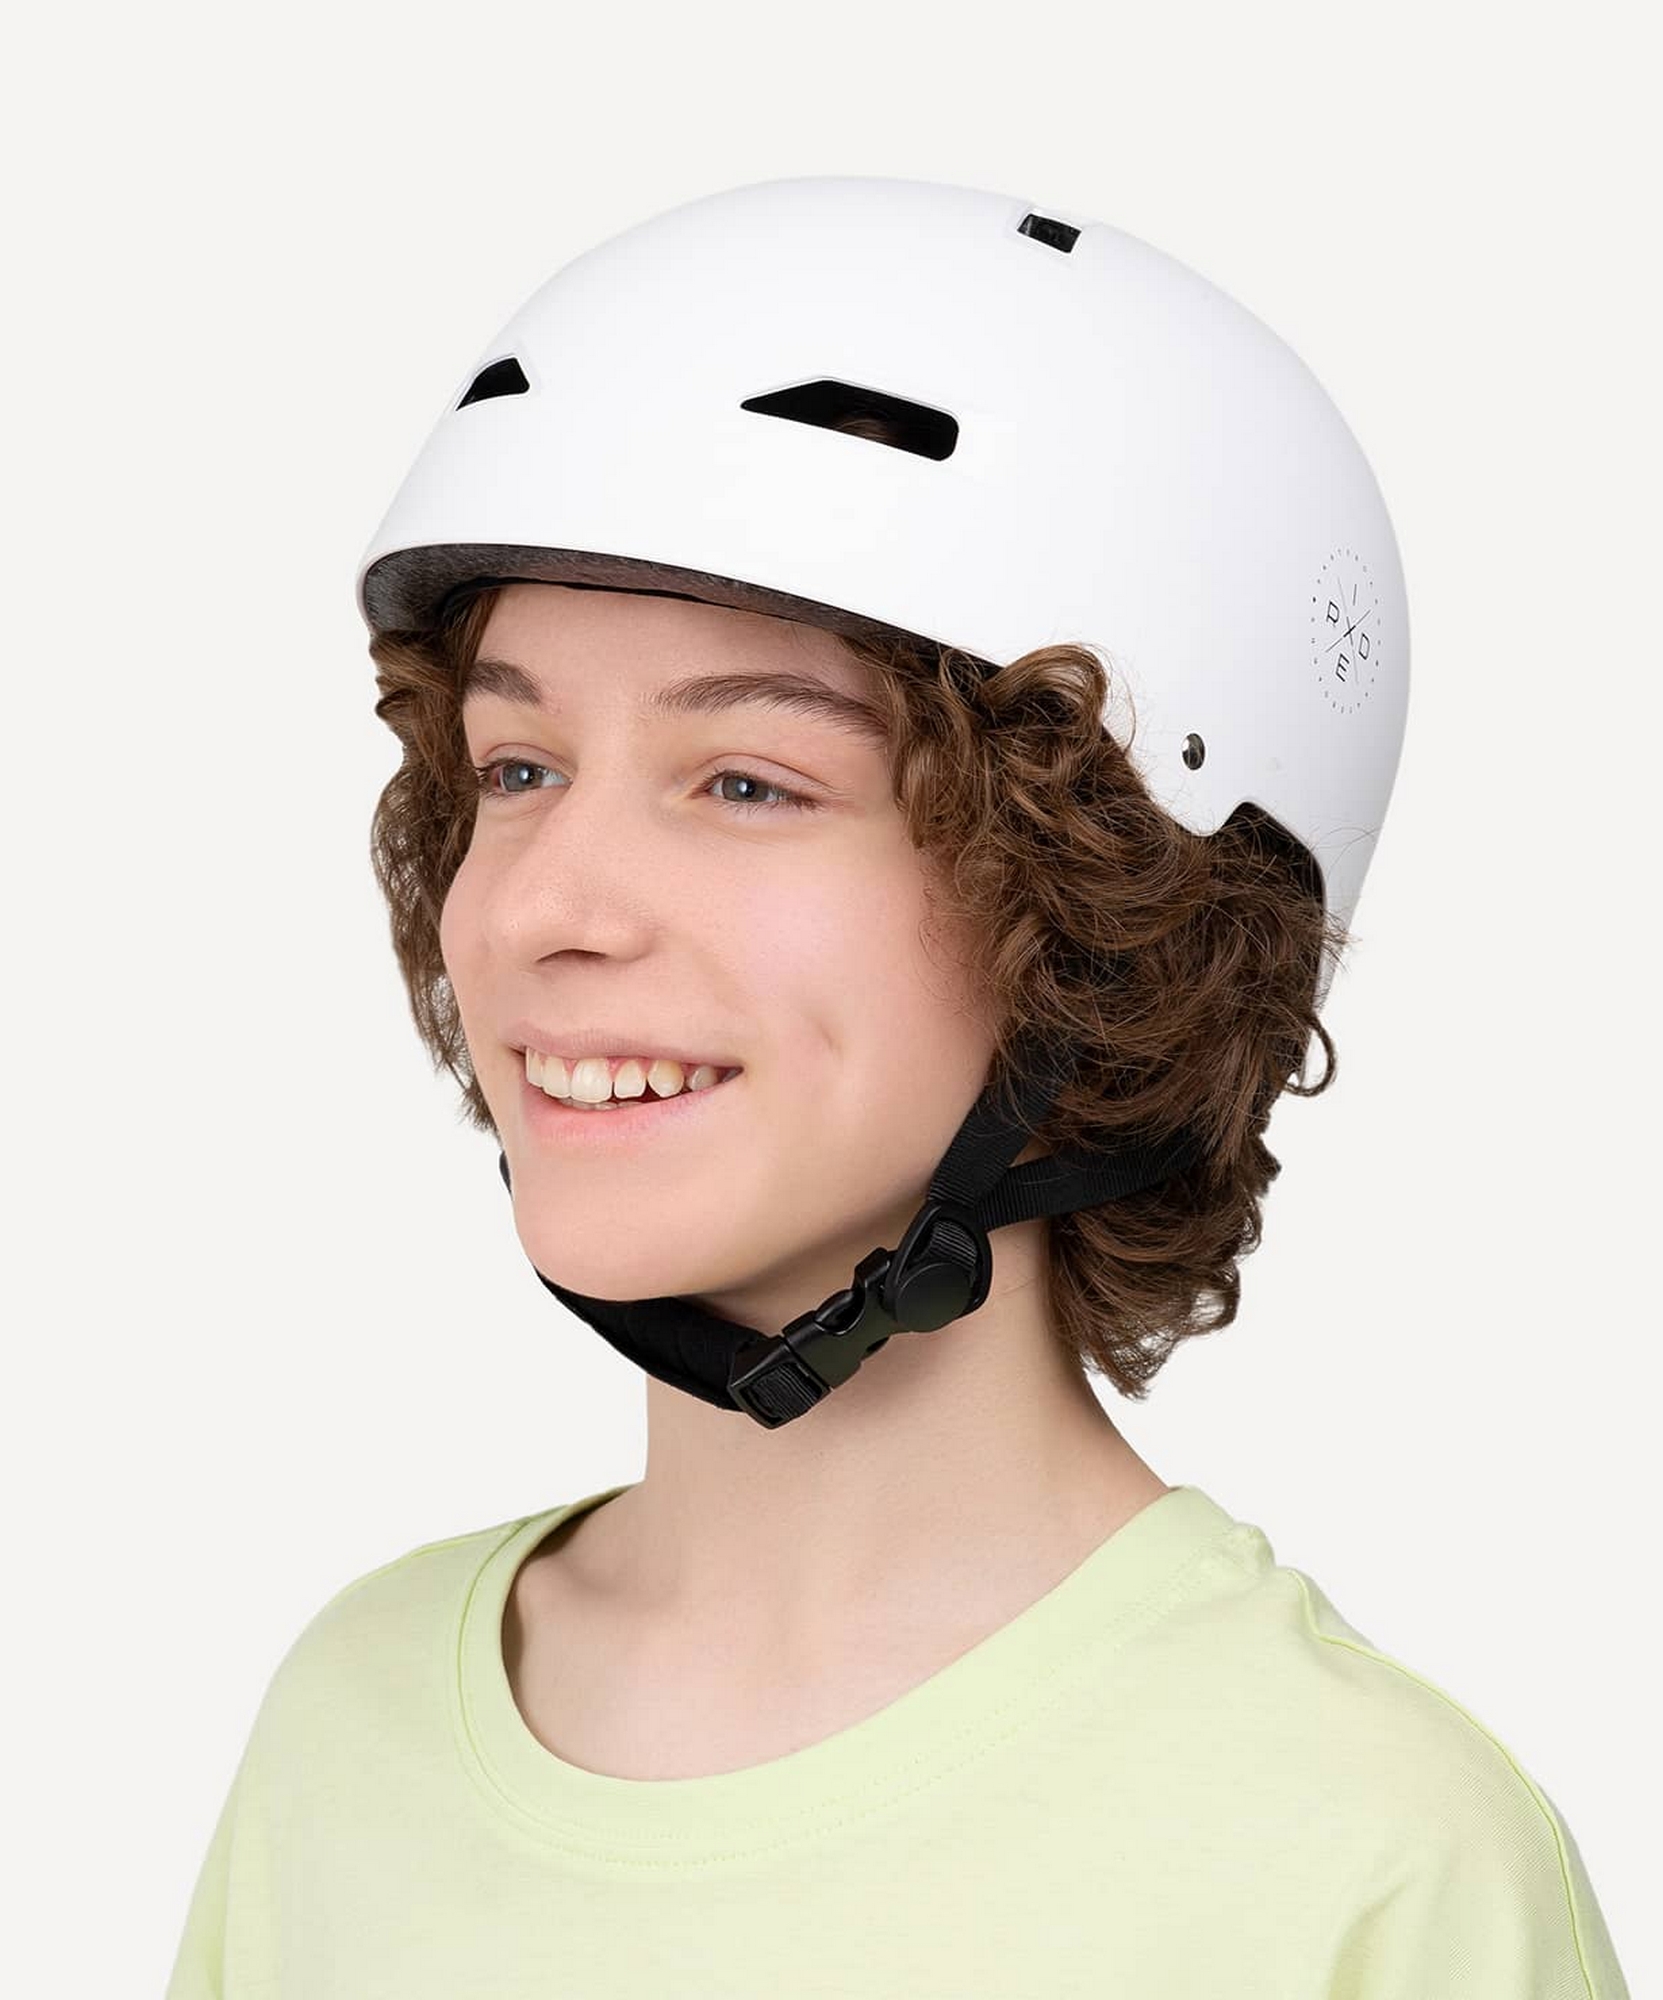 Шлем защитный, с регулировкой Ridex SB белый 1663_2000